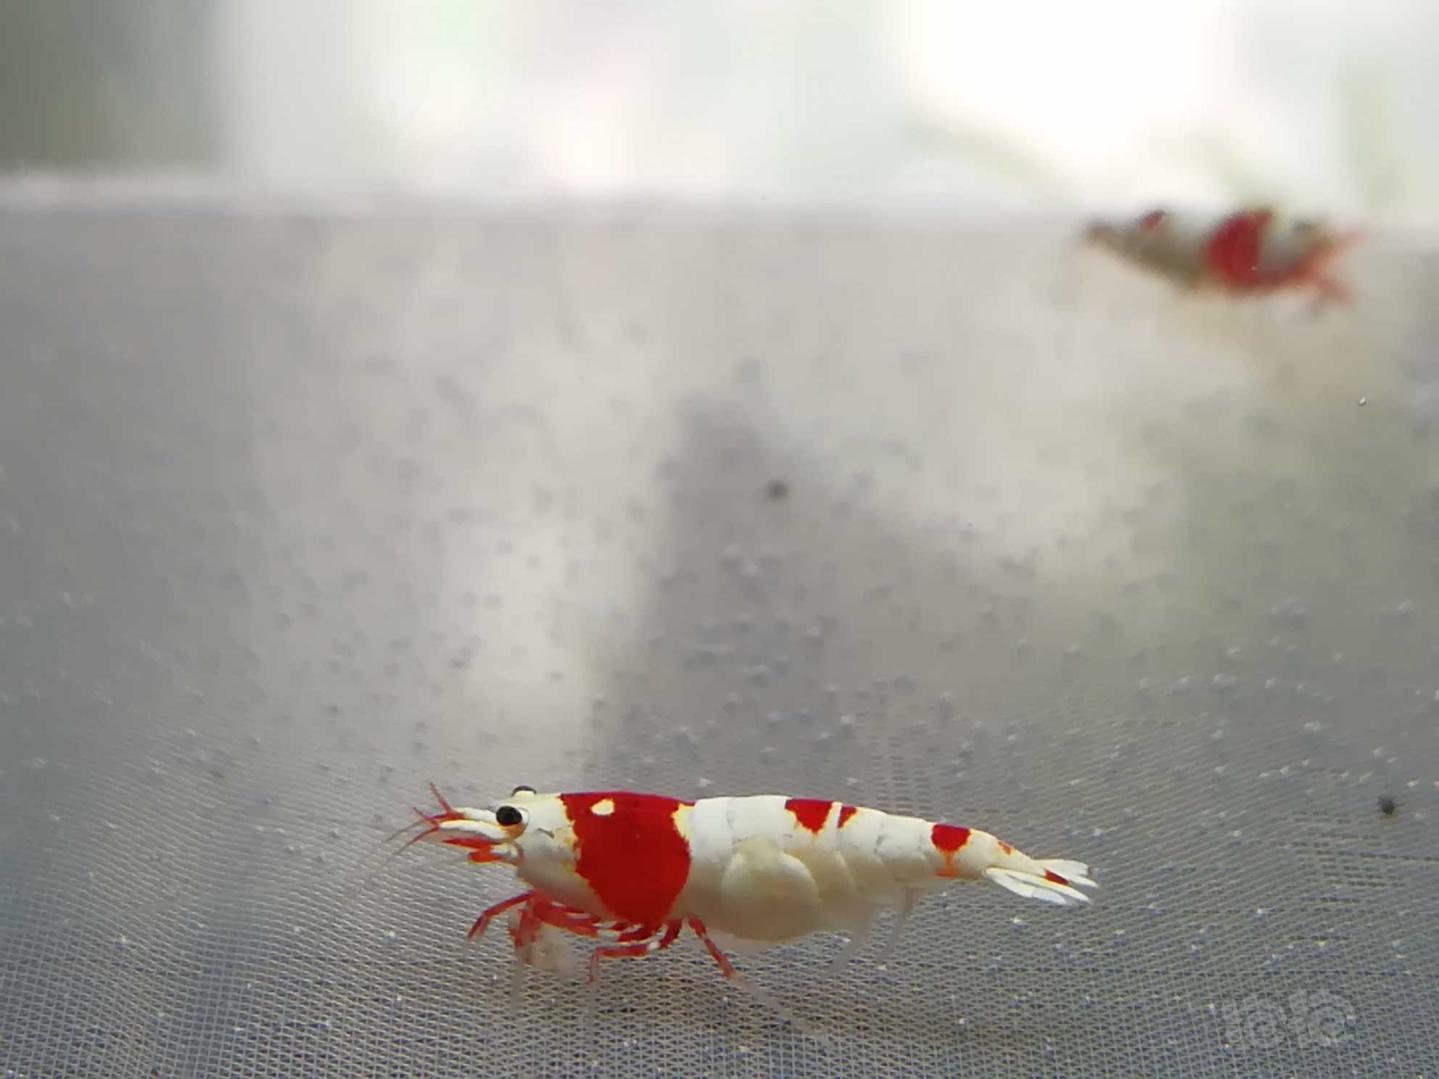 【虾】2020-09-9#RMB拍卖#红白纯血水晶虾一份2只-图5